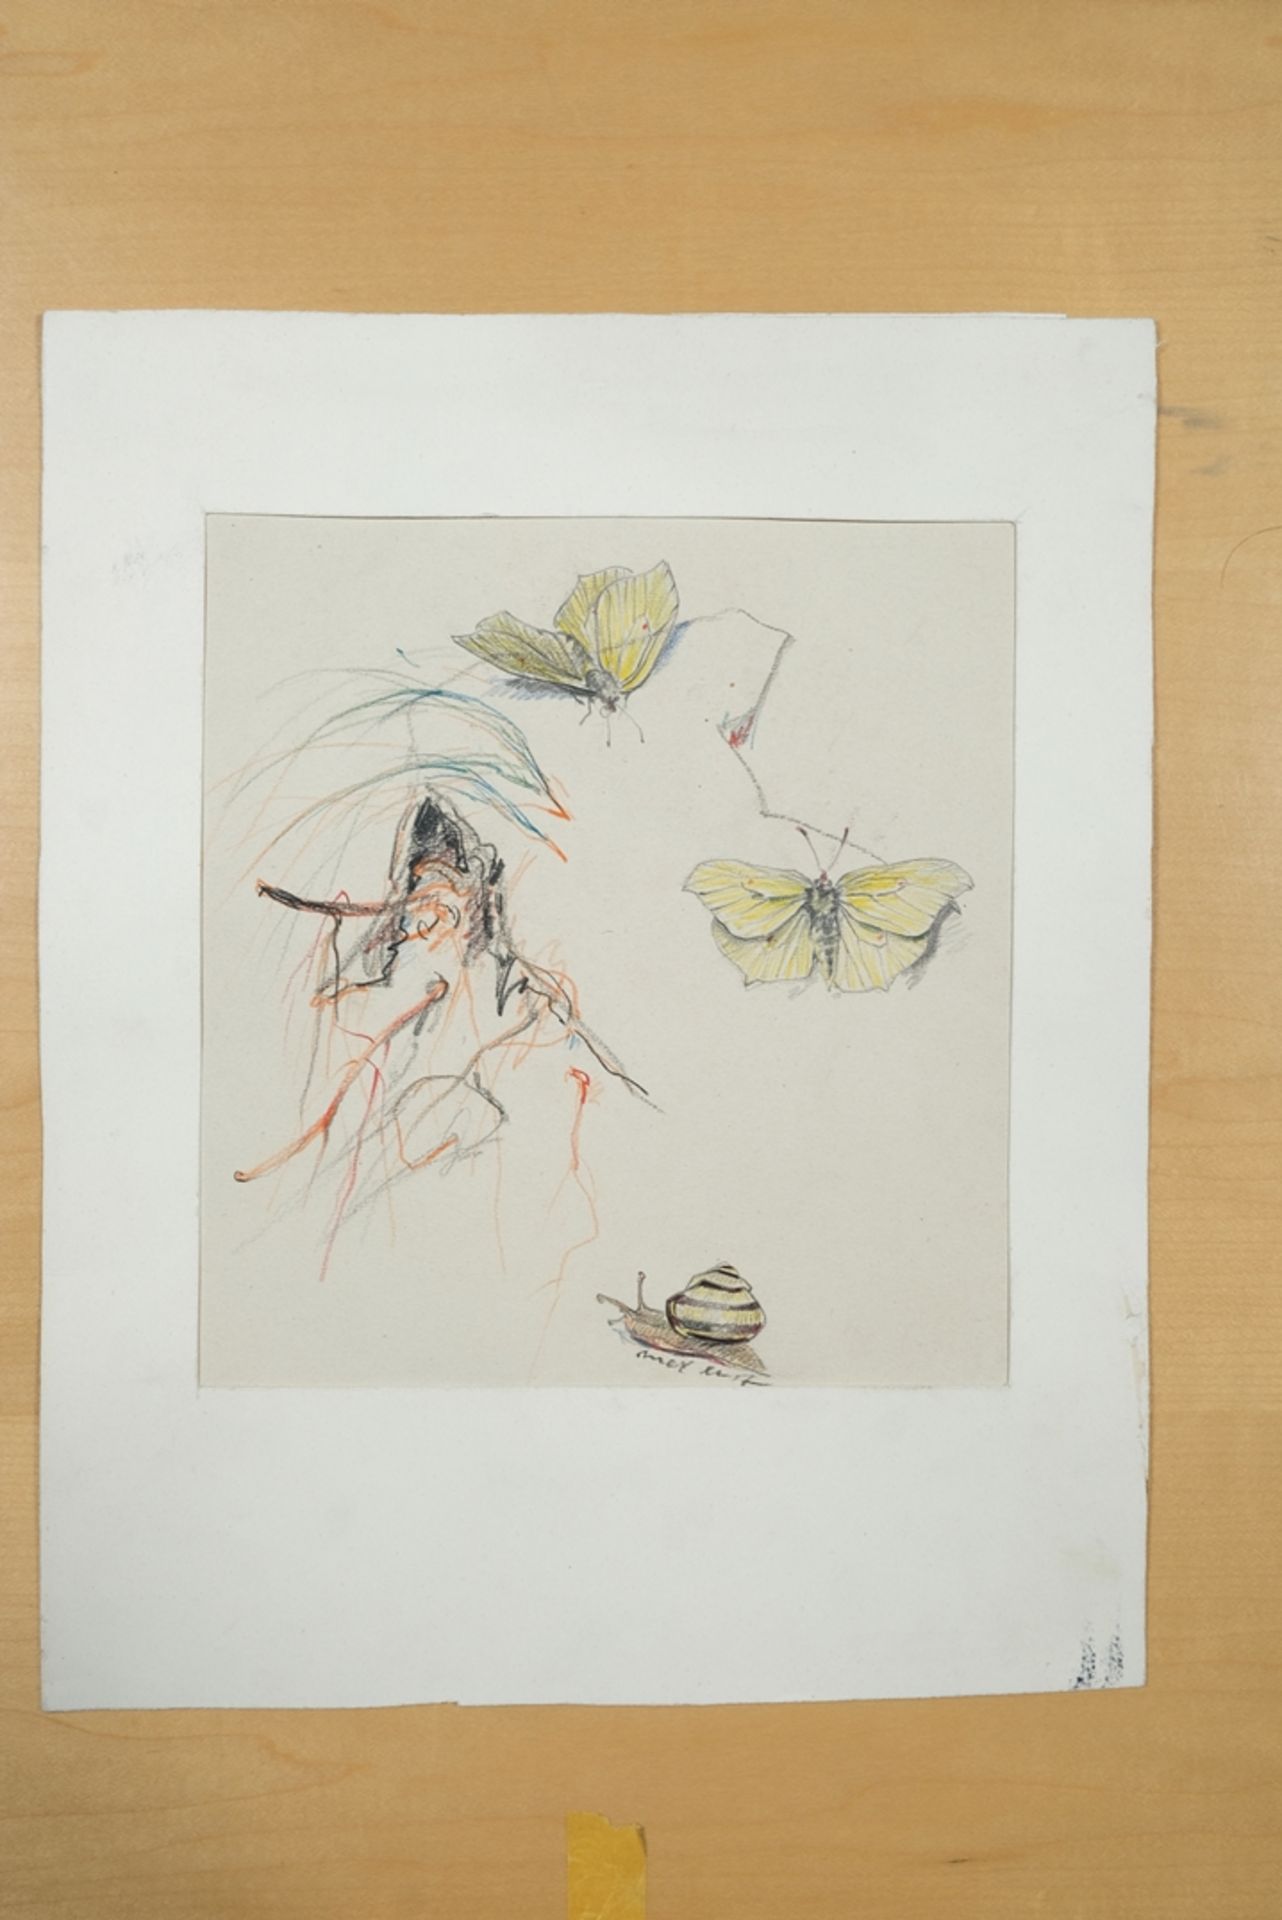 Unbekannt (20. Jahrhundert) Schmetterlinge und Schnecken, Farbzeichnung auf Papier.  - Bild 2 aus 3